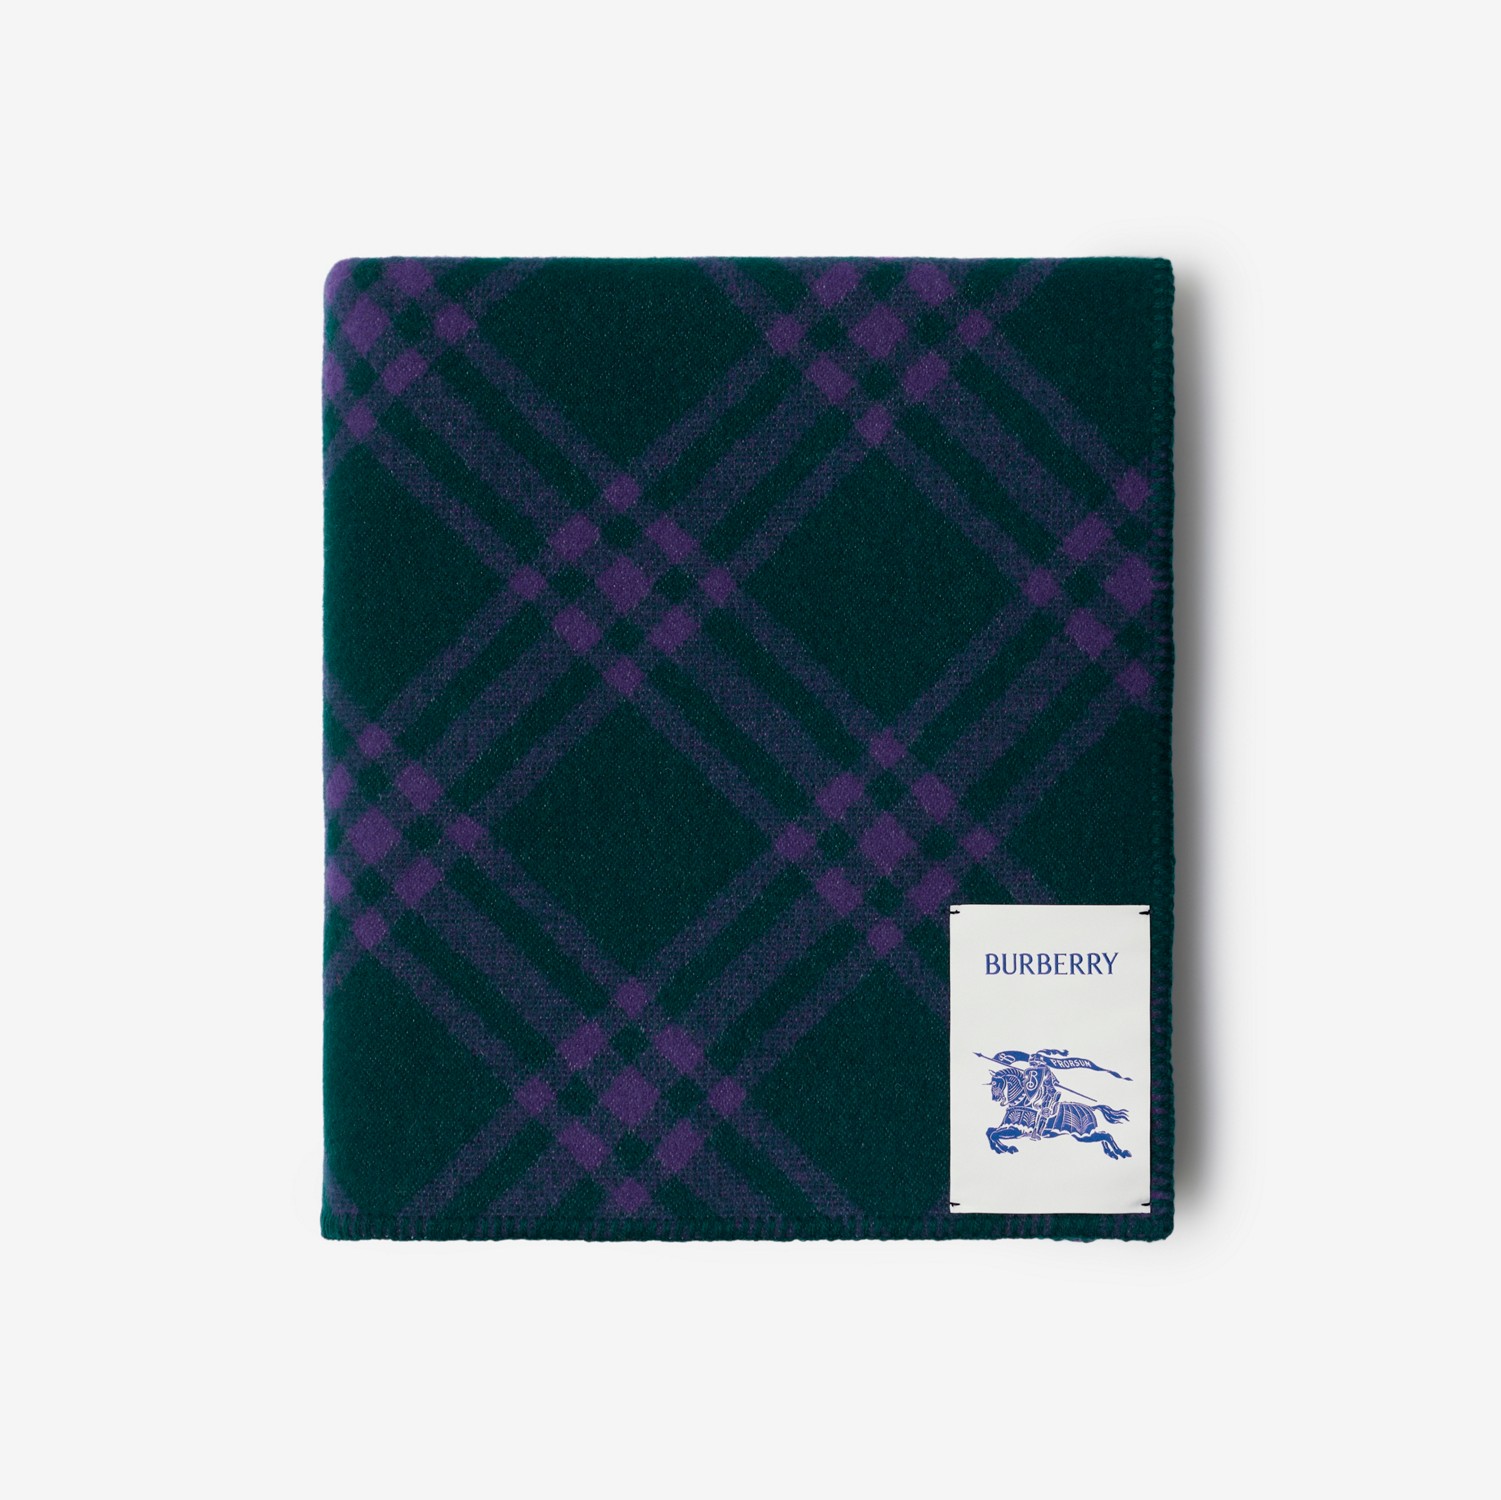 格纹羊毛毯 (藤蔓绿 / 皇室紫) | Burberry® 博柏利官网